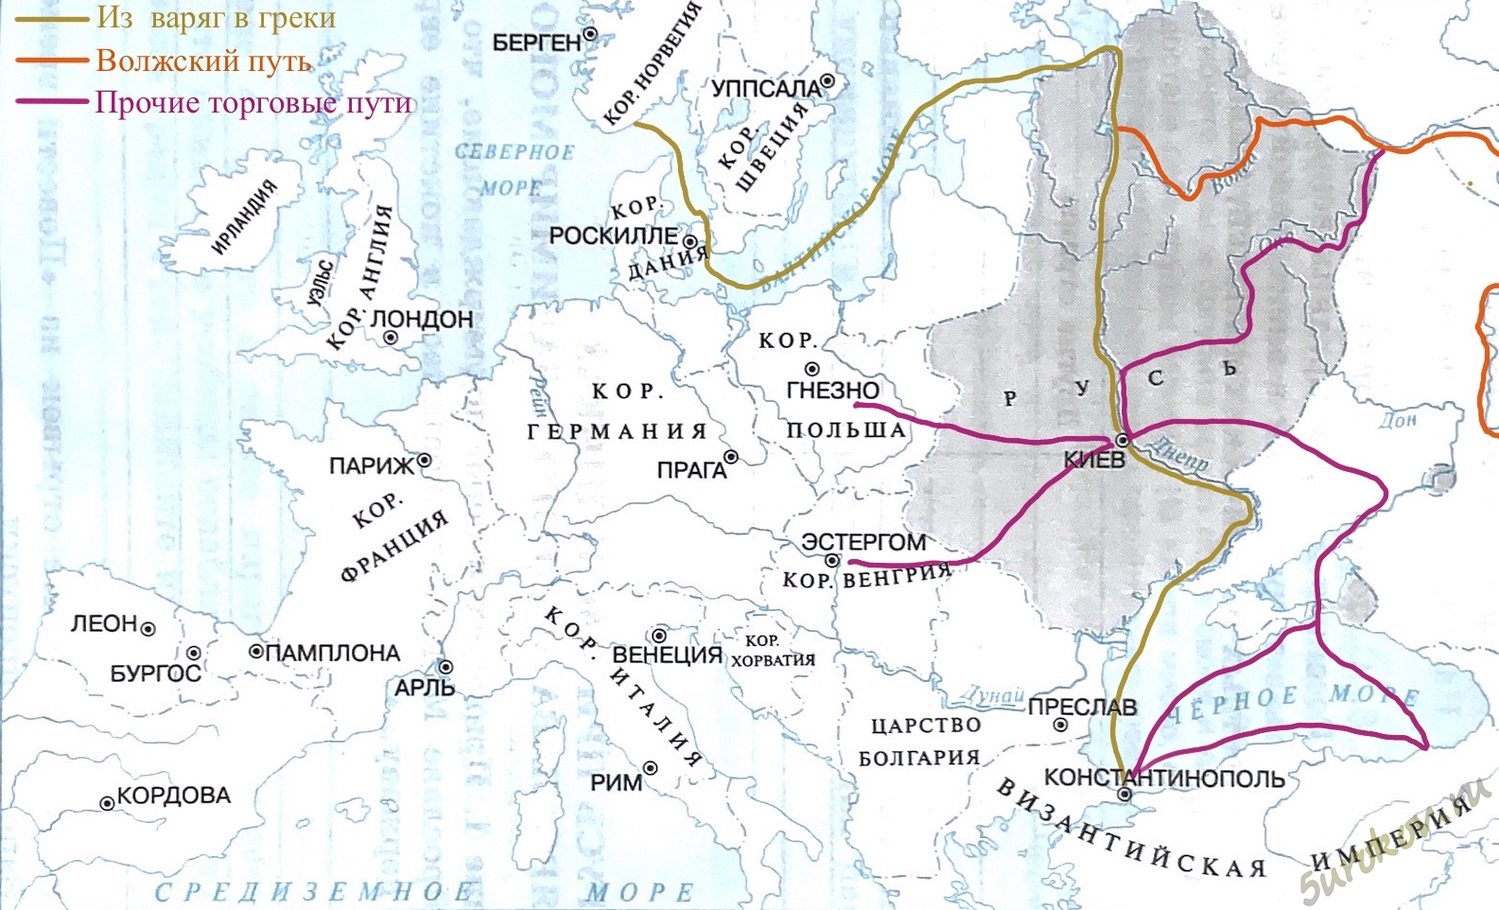 Торговые путь Варяг в греки на карте